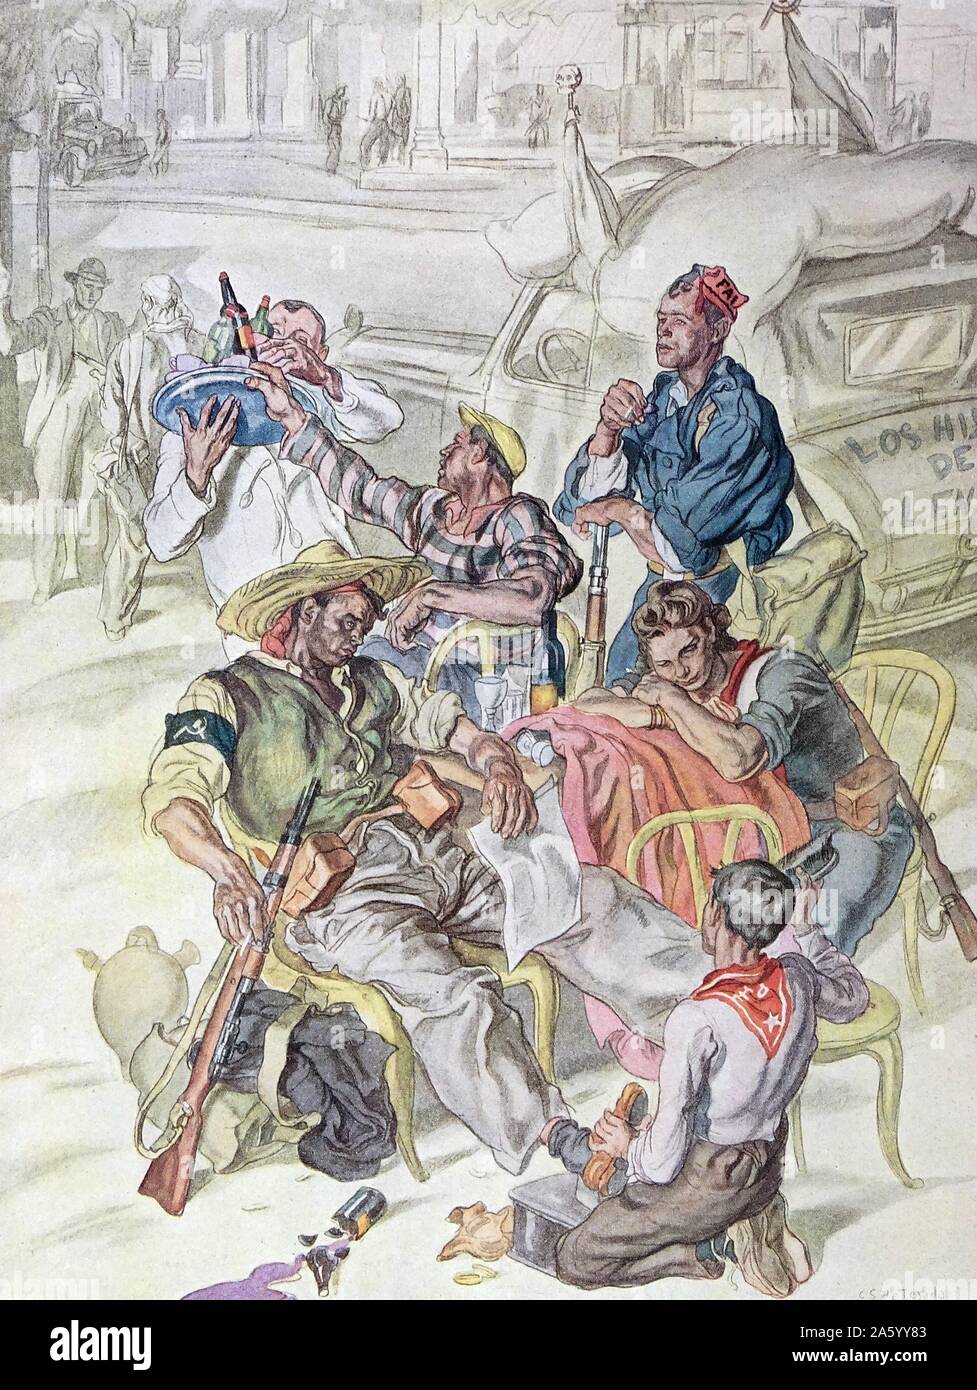 Abbildung zeigt republikanischen Milizen in Madrid 1937. Durch Carlos Saenz de Tejada (1897-1958), spanischer Maler und Illustrator; identifiziert mit der nationalistischen (faschistischen) Seite im spanischen Bürgerkrieg. Stockfoto